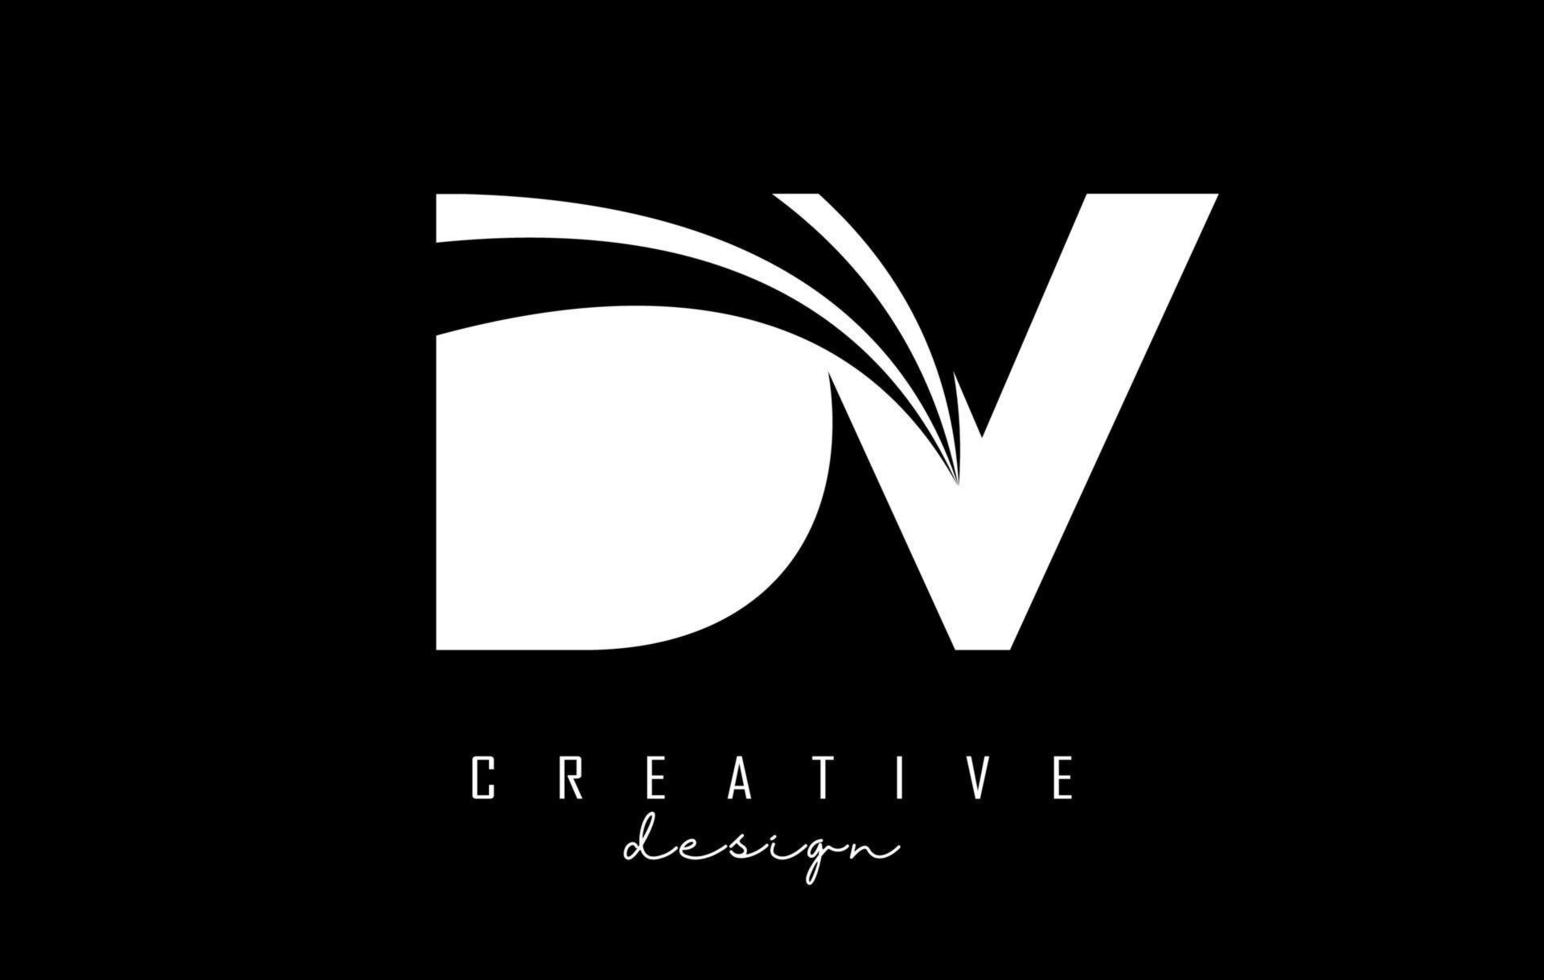 letras brancas criativas dv dv logotipo com linhas principais e design de conceito de estrada. letras com desenho geométrico. vetor